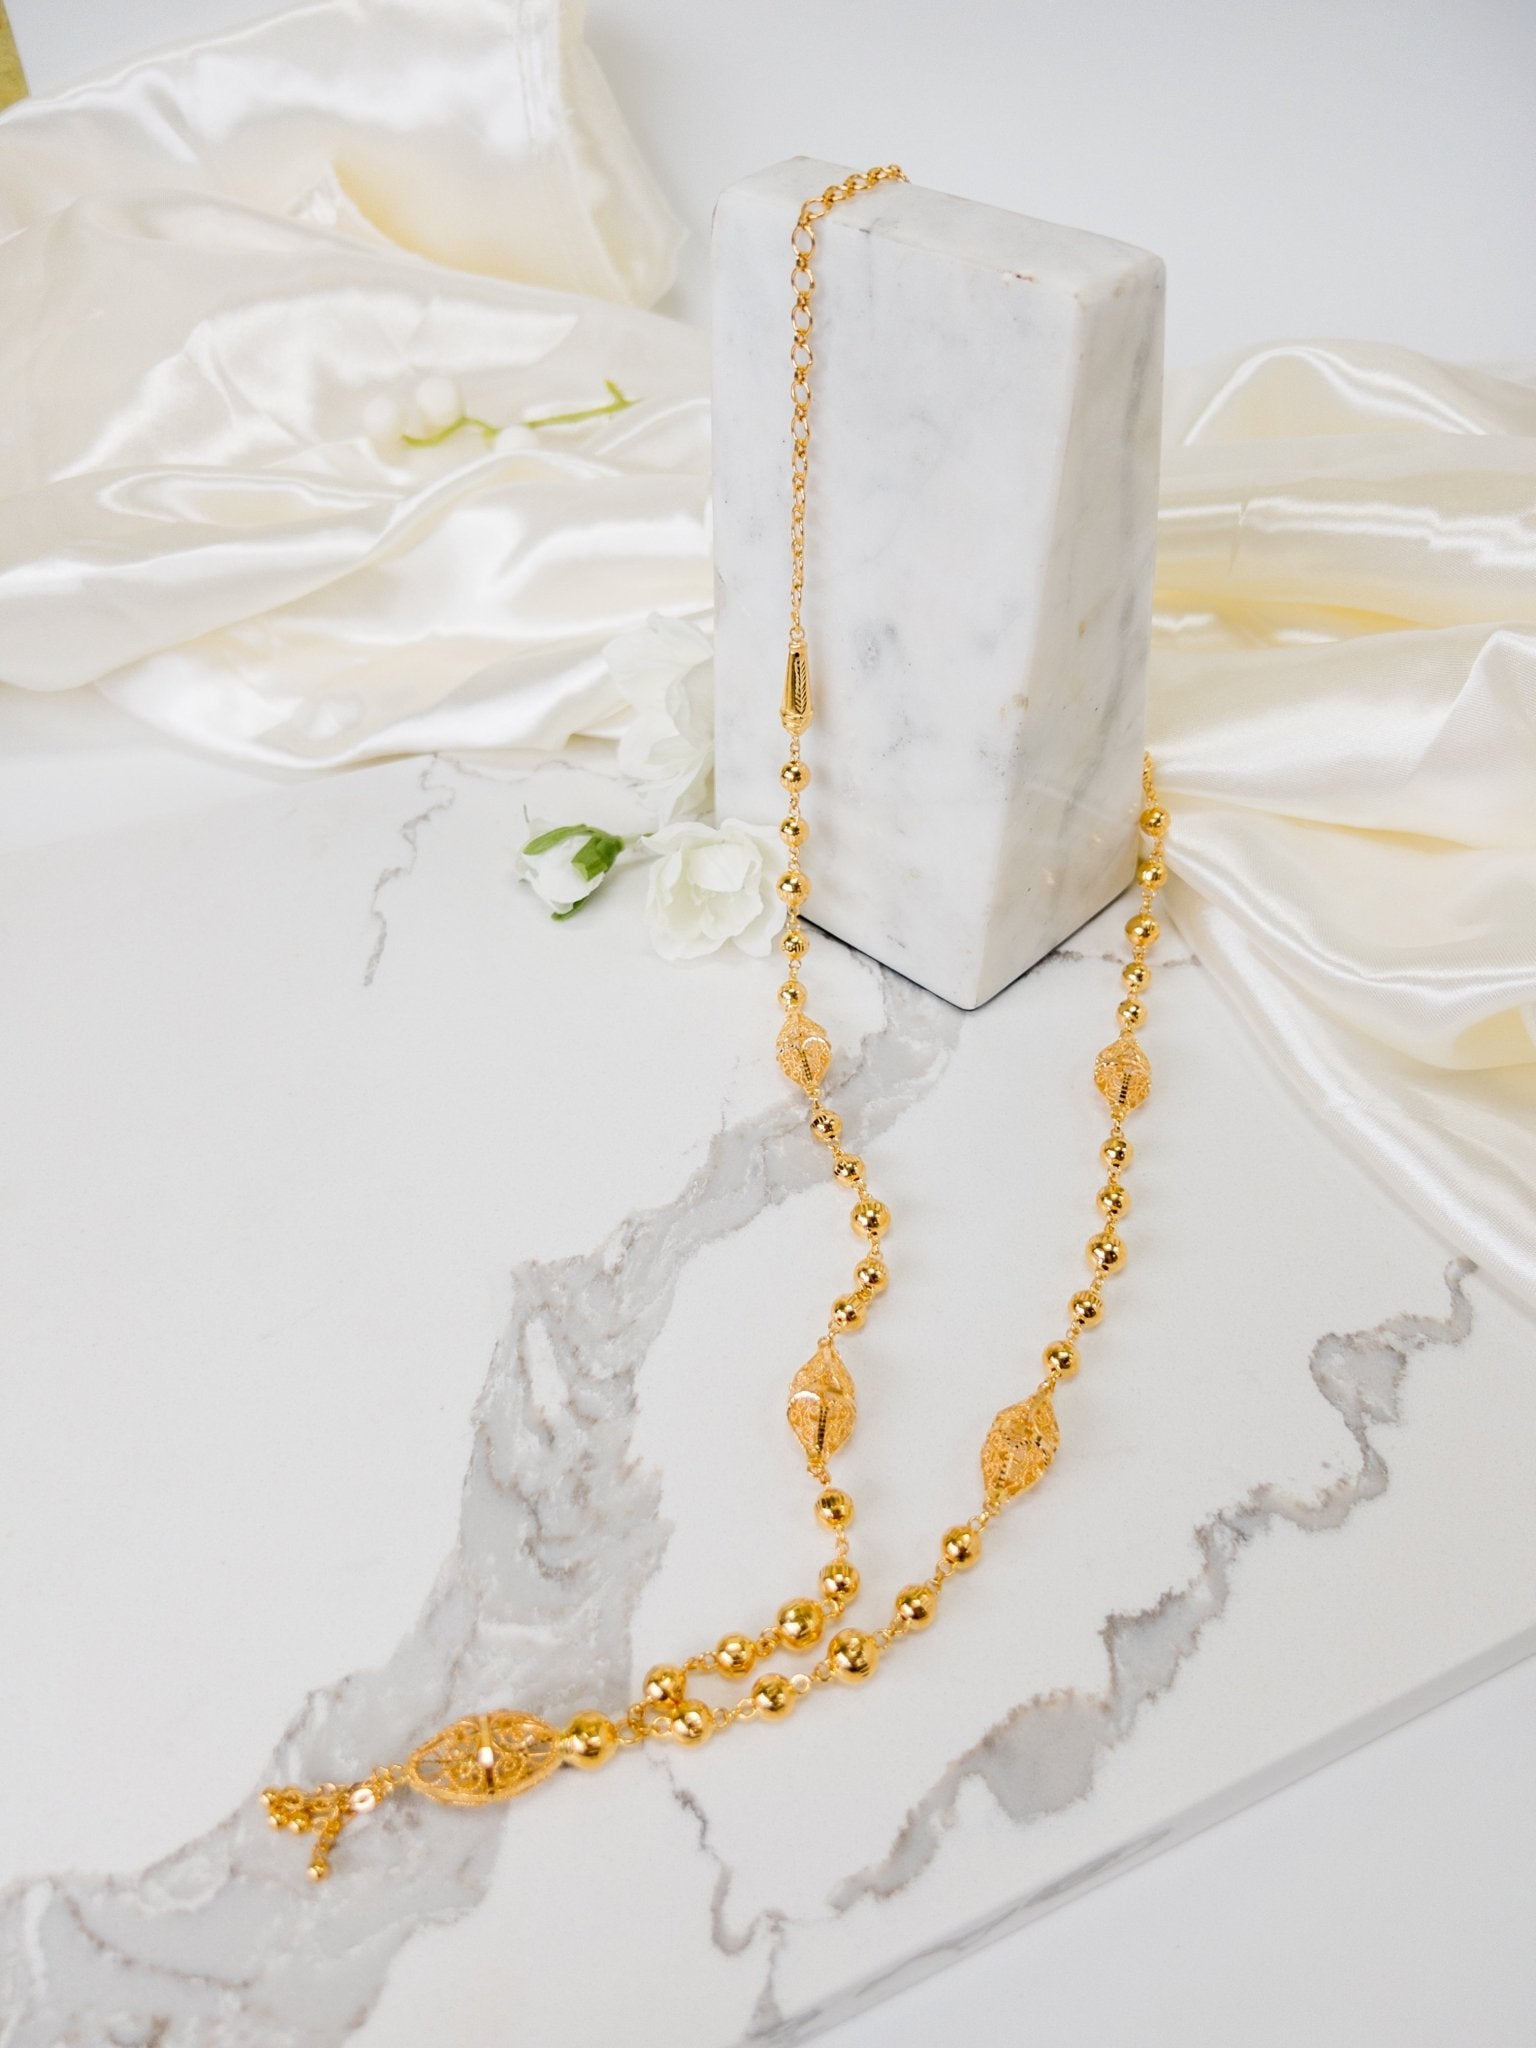 Masbaha Necklace 21k Gold - Cleopatra Jewelers